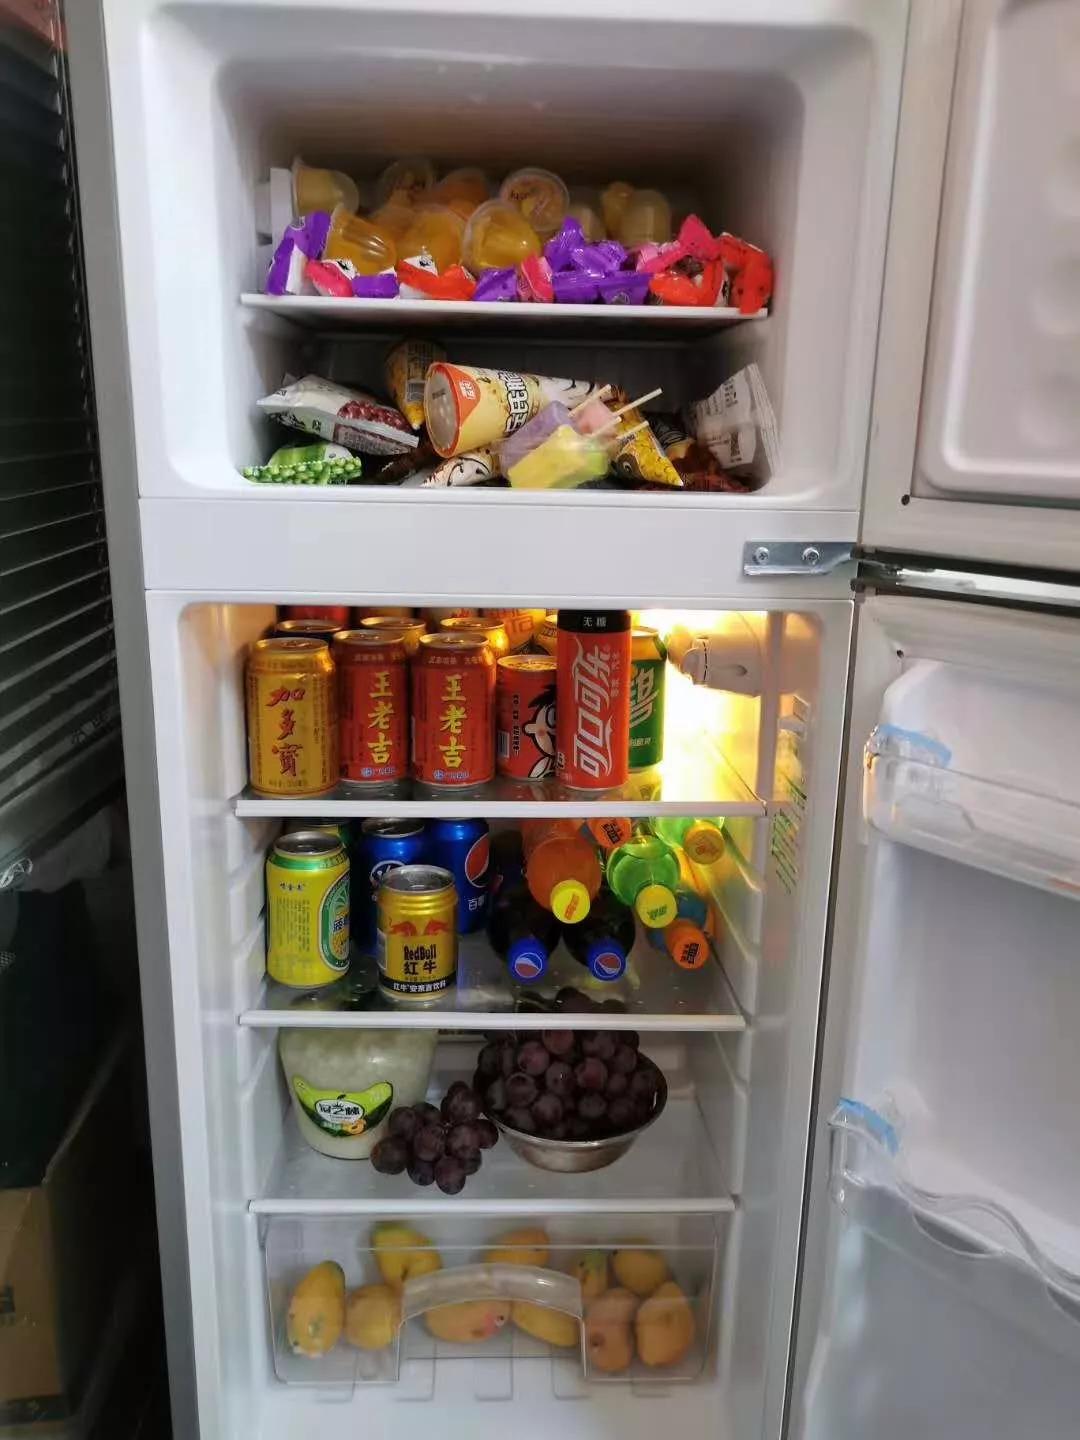 "水果,零食,饮料这些都是小case,店里从来没断过,不信你去冰箱看看!